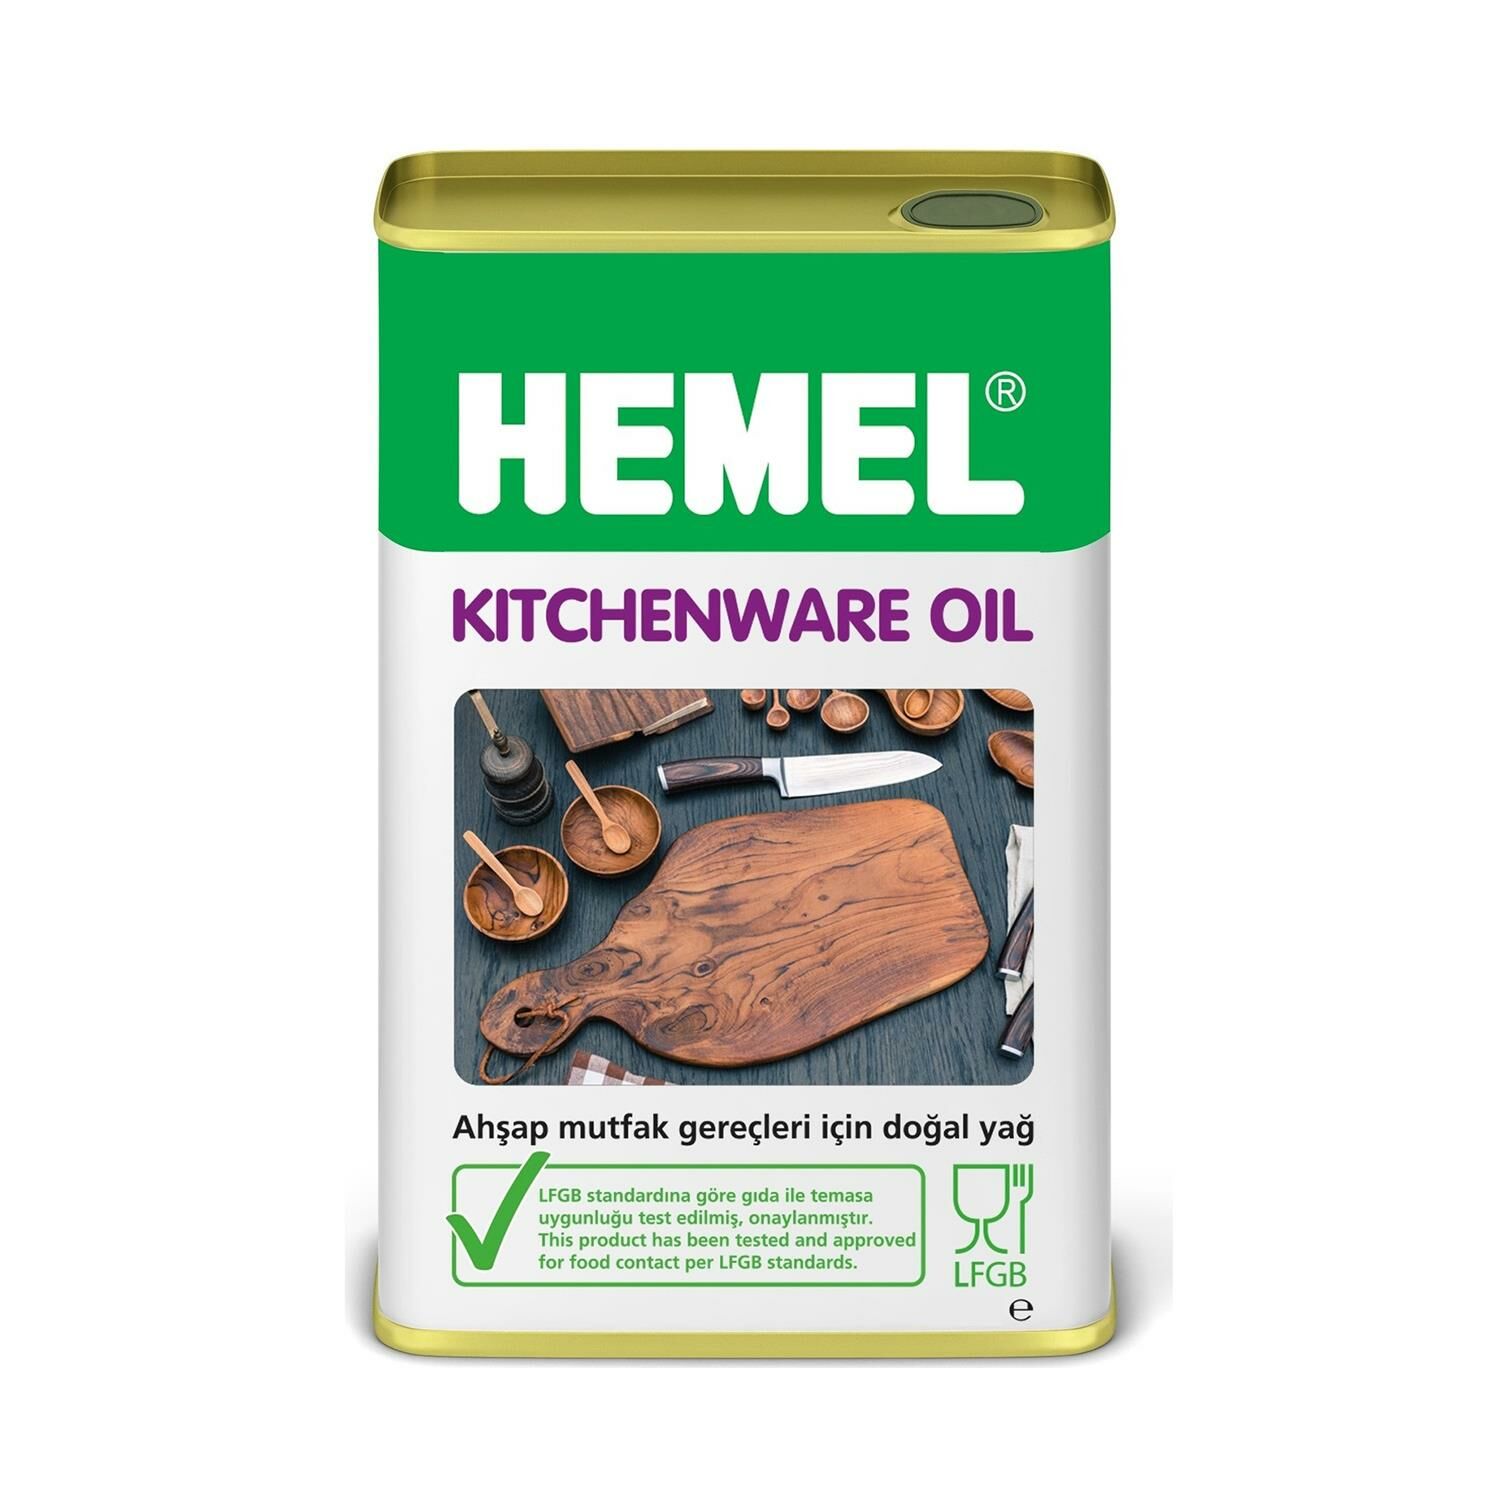 HEMEL Kitchenware Oil - Mutfak Gereçleri İçin Doğal Yağ 1 LT